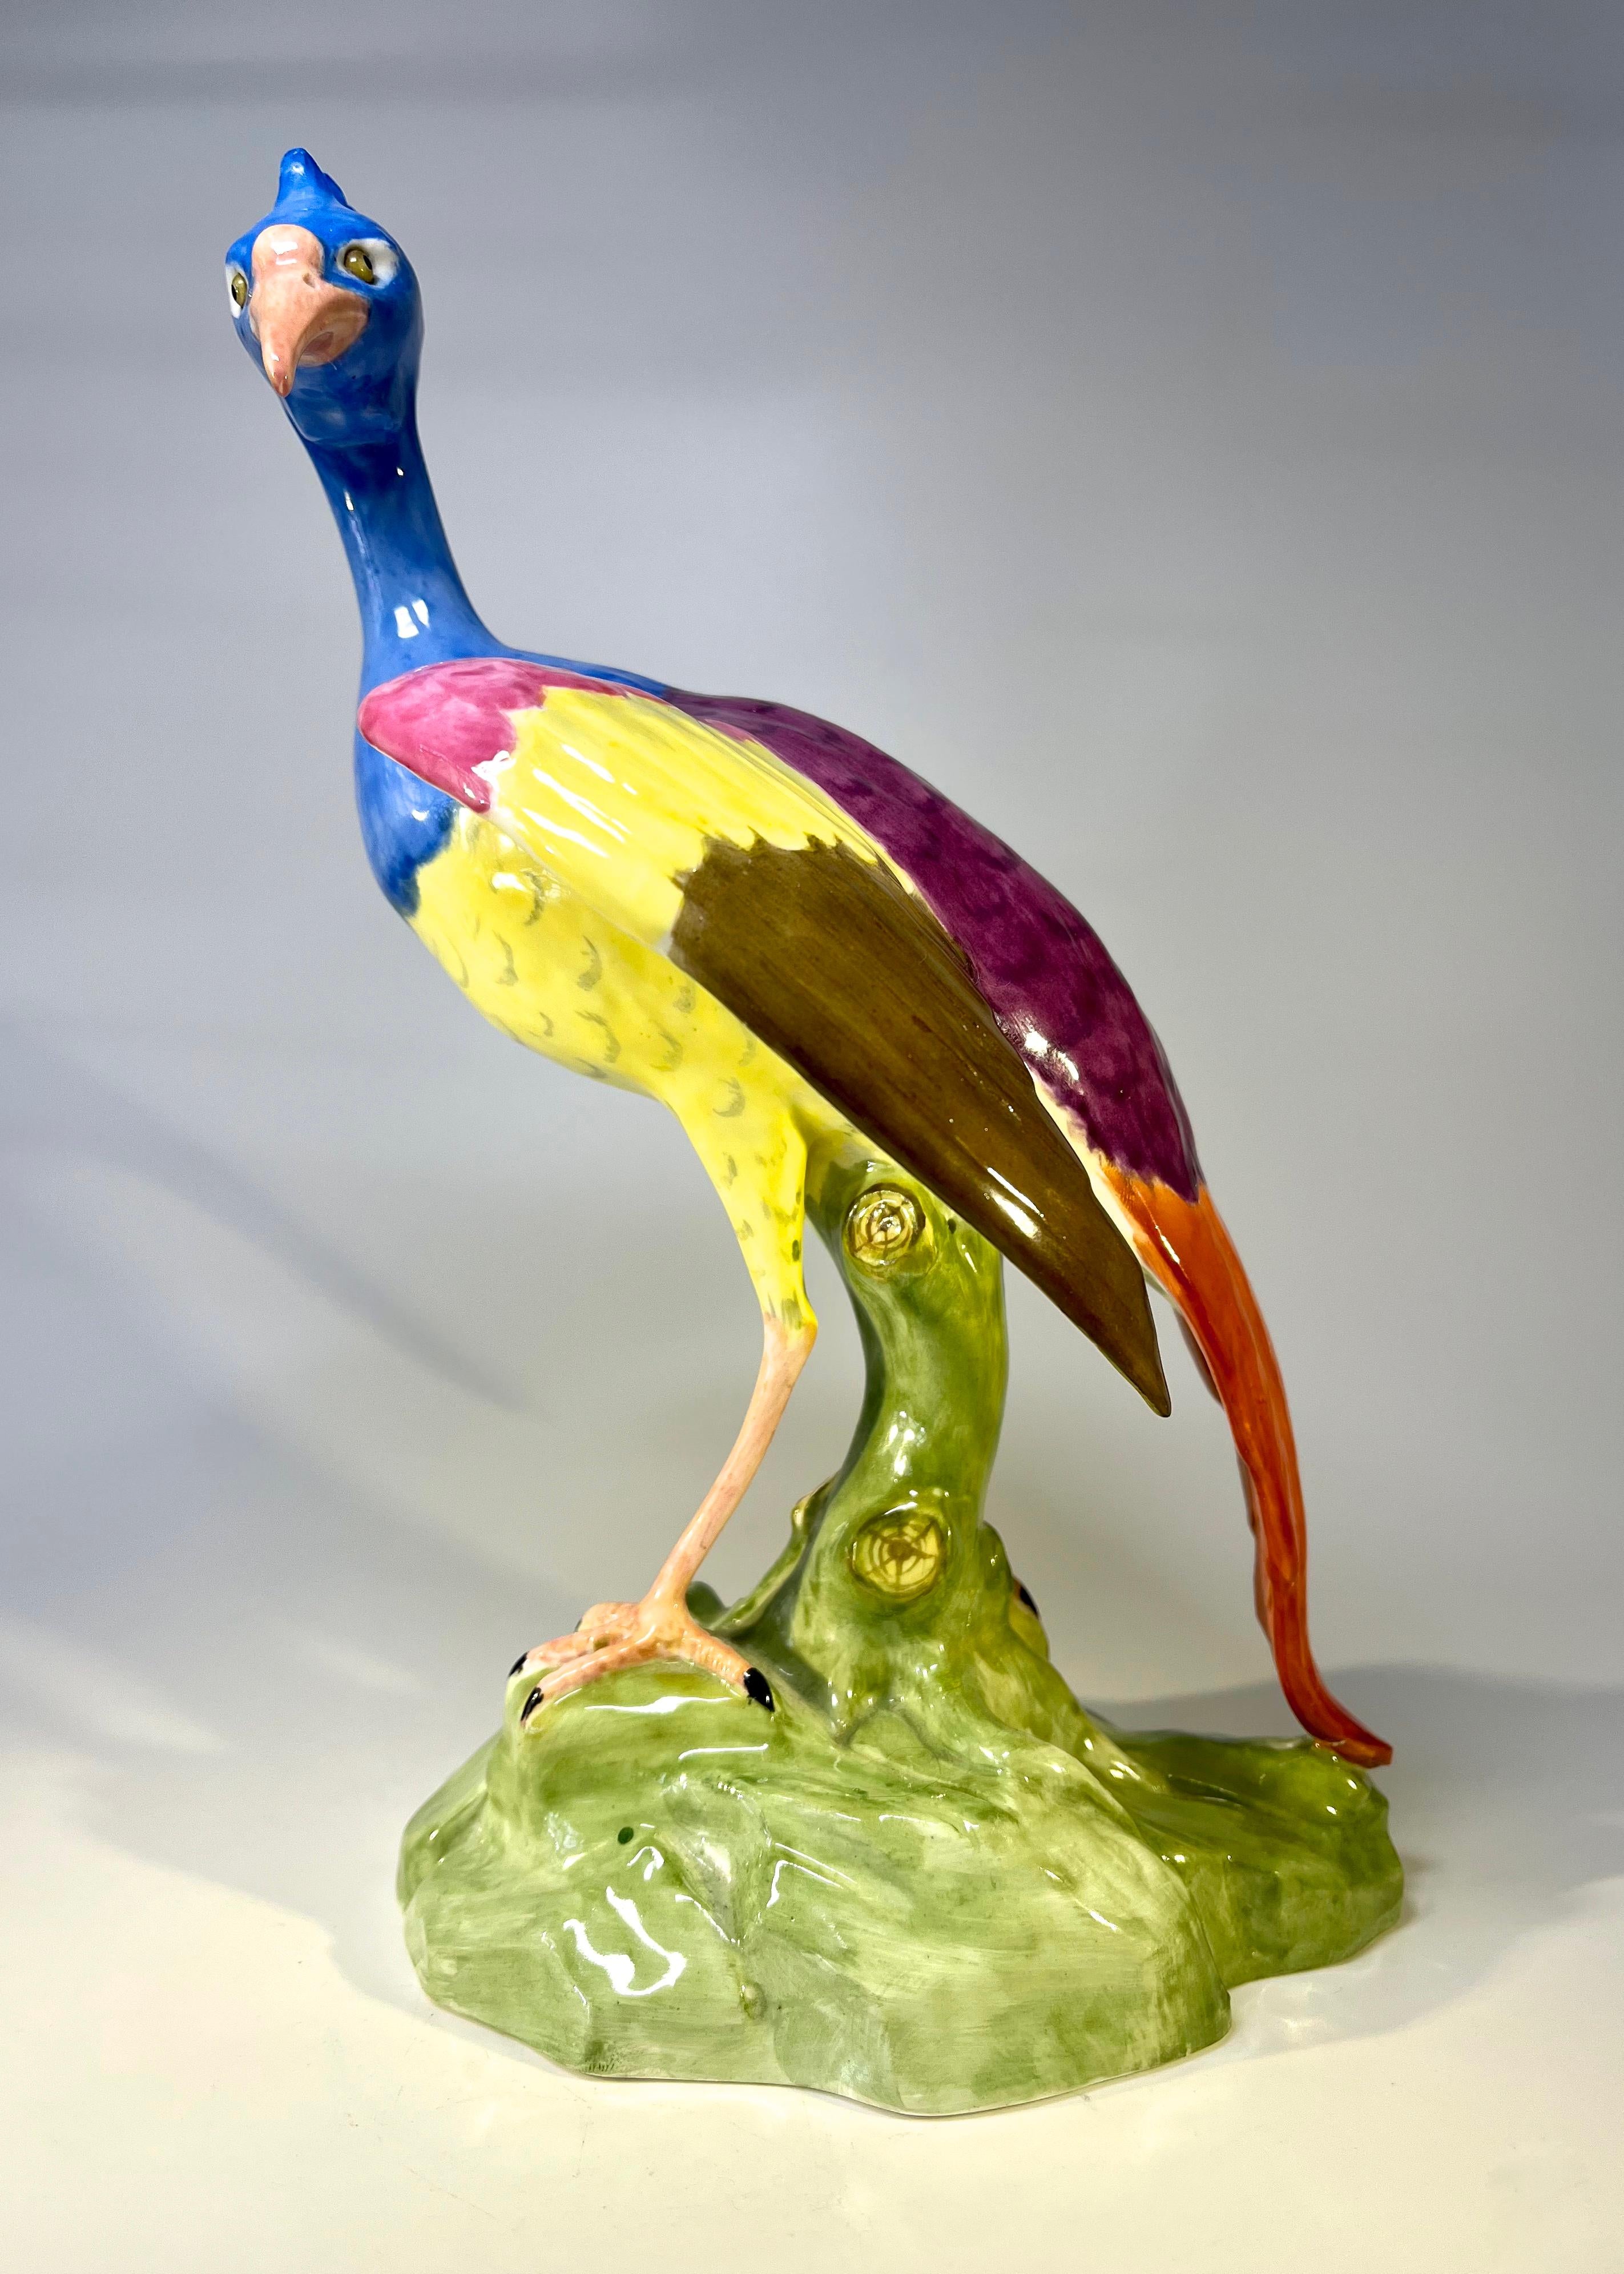 Un magnifique et excentrique oiseau fantaisie Chelsea en porcelaine osseuse par Copeland, Spode, inspiré par les originaux de Meissen
L'artiste avait toute latitude pour choisir les couleurs, ce qui a donné naissance à cette pièce